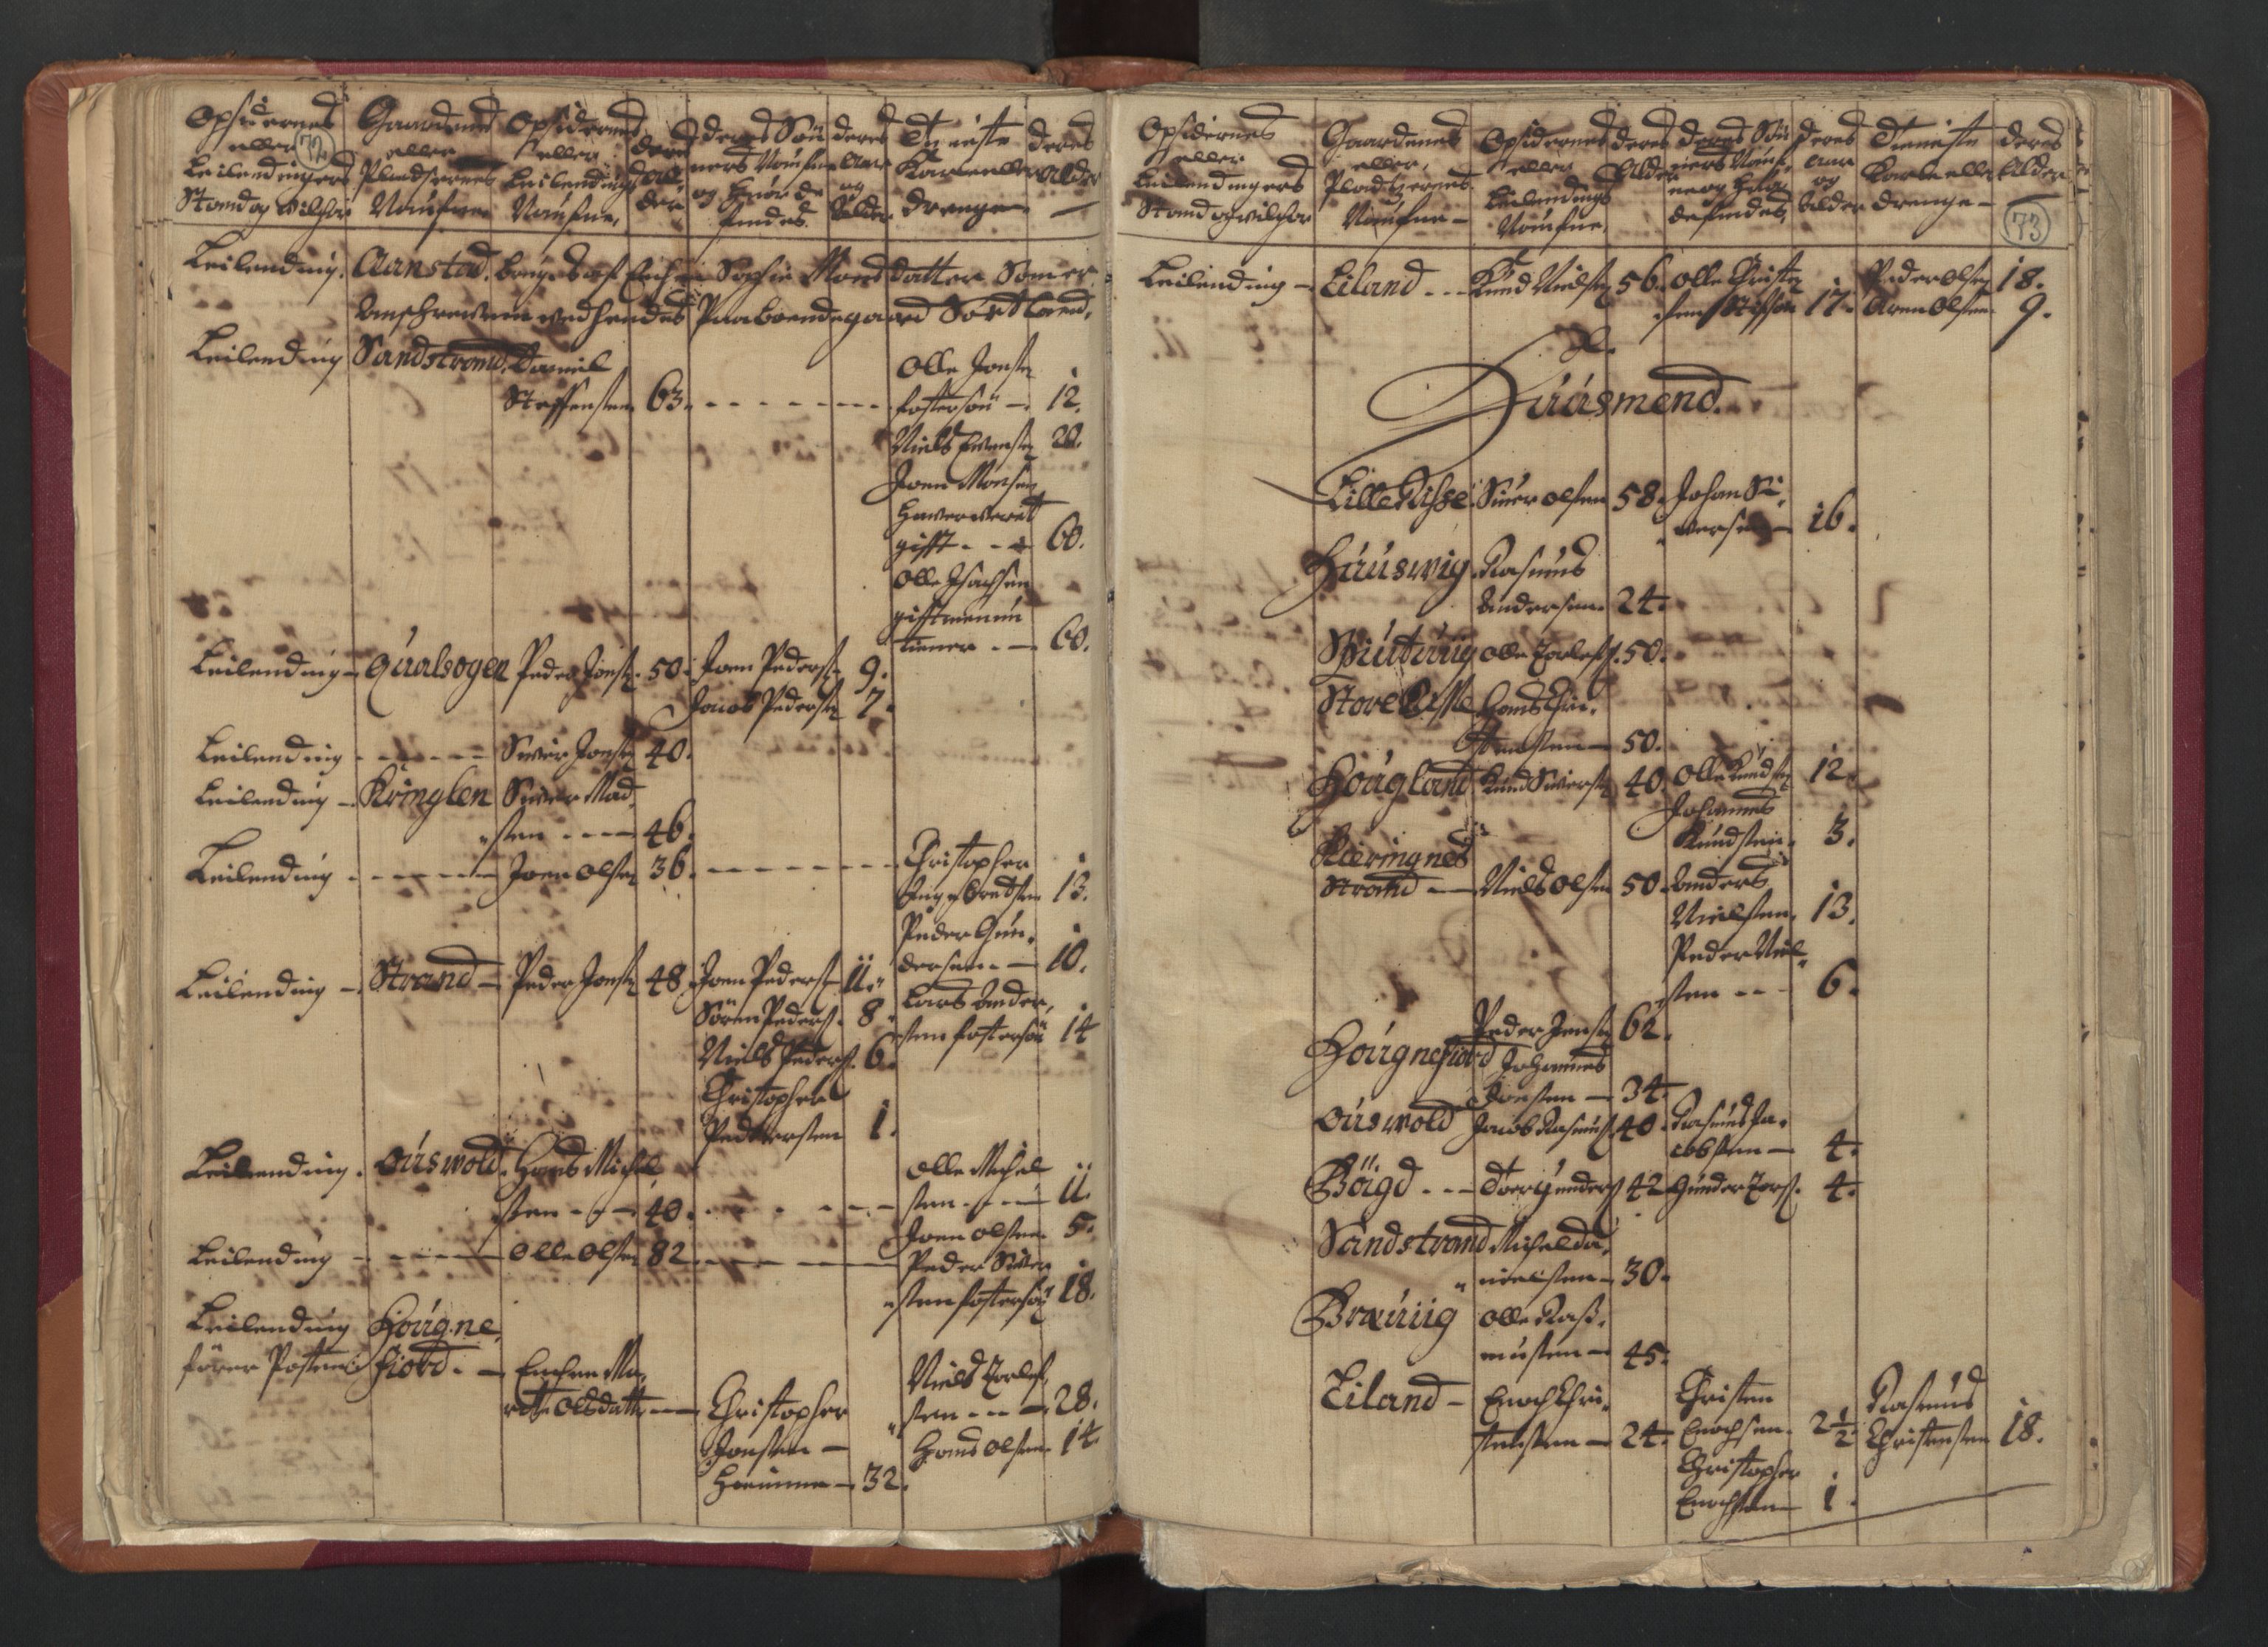 RA, Census (manntall) 1701, no. 18: Vesterålen, Andenes and Lofoten fogderi, 1701, p. 72-73